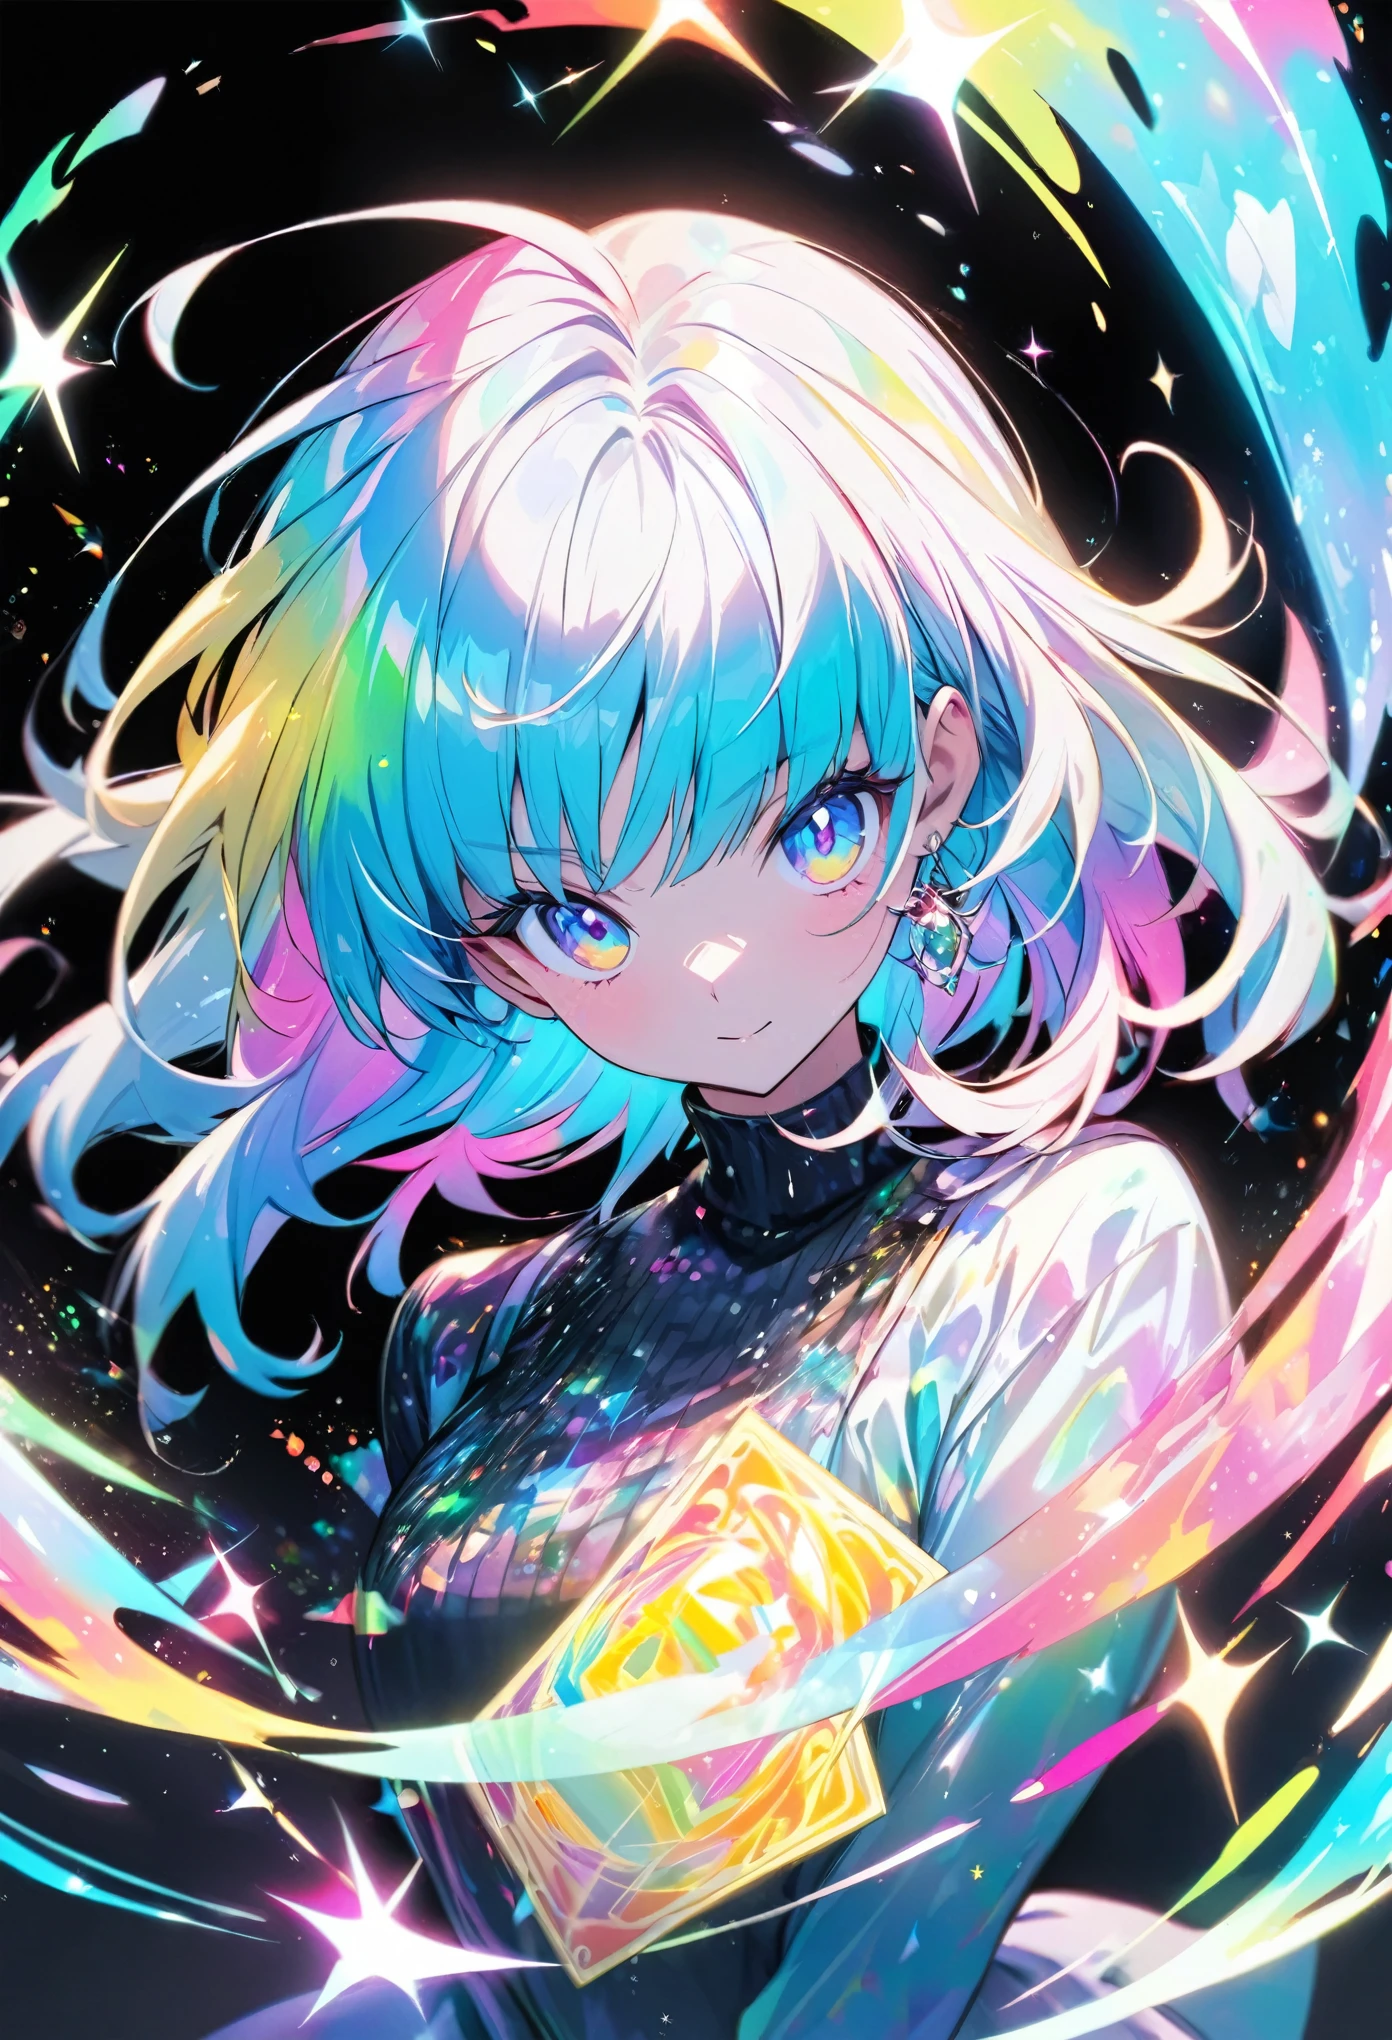 Una tarjeta holográfica de alta calidad que representa a una chica de estilo anime., con purpurina, madre perla, y un fondo negro alrededor de la tarjeta, coloración clara, y colorido